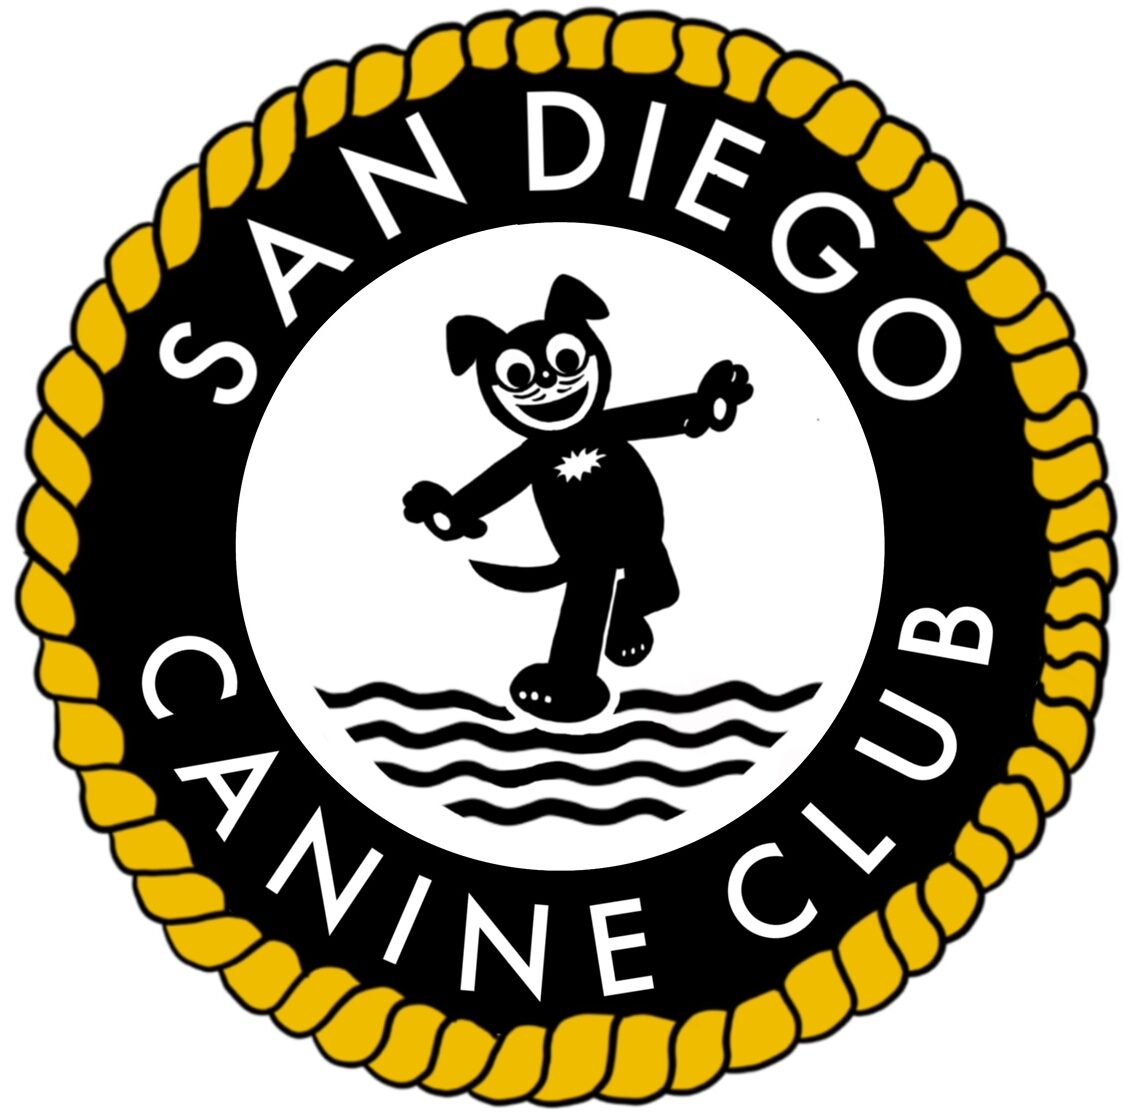 San Diego Canine Club LLC